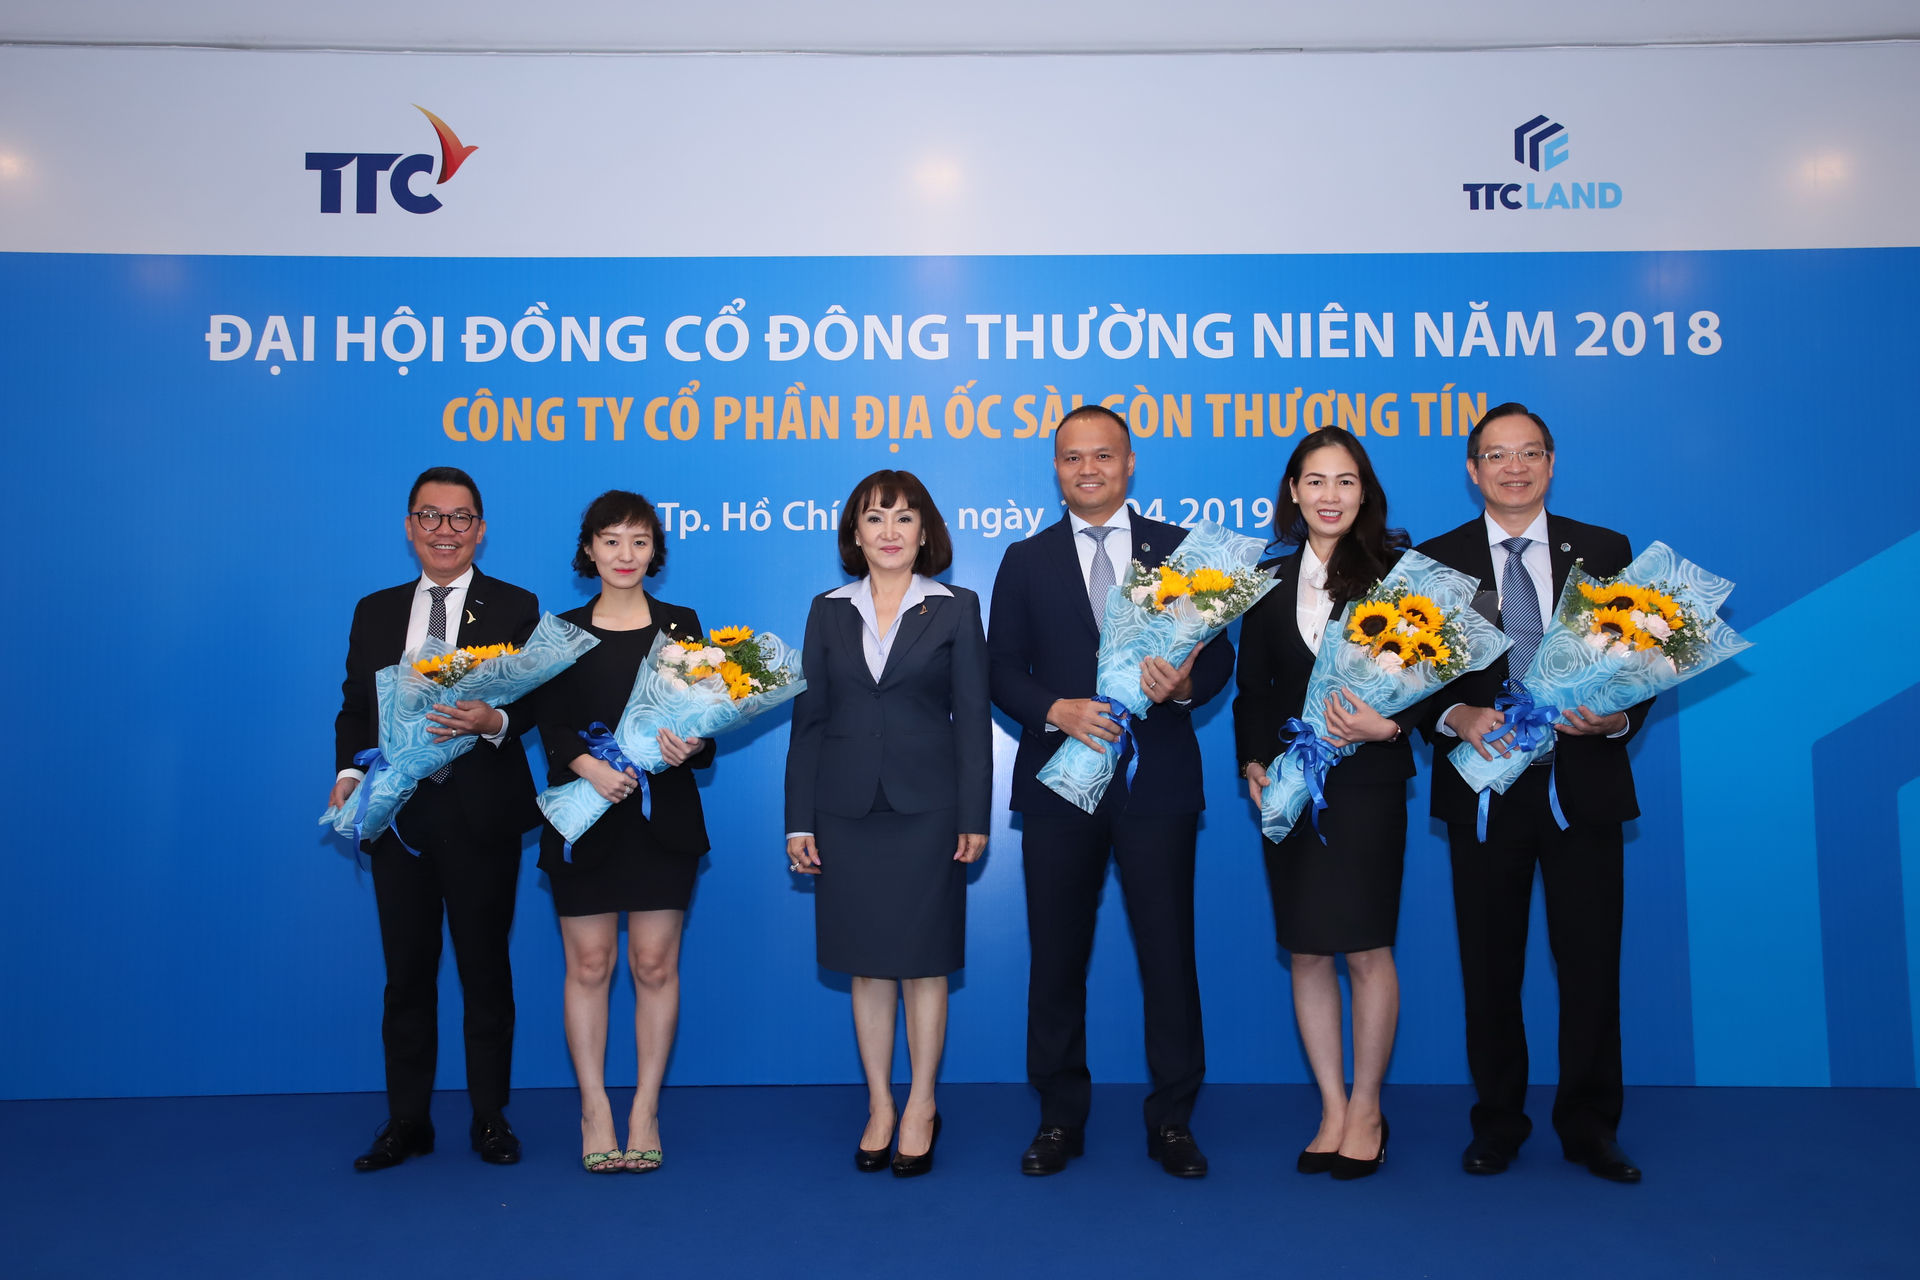  Ông Nguyễn Đăng Thanh (chính giữa) được bổ nhiệm giữ chức vụ Chủ tịch HĐQTkiêm TGĐ TTC LAND. 